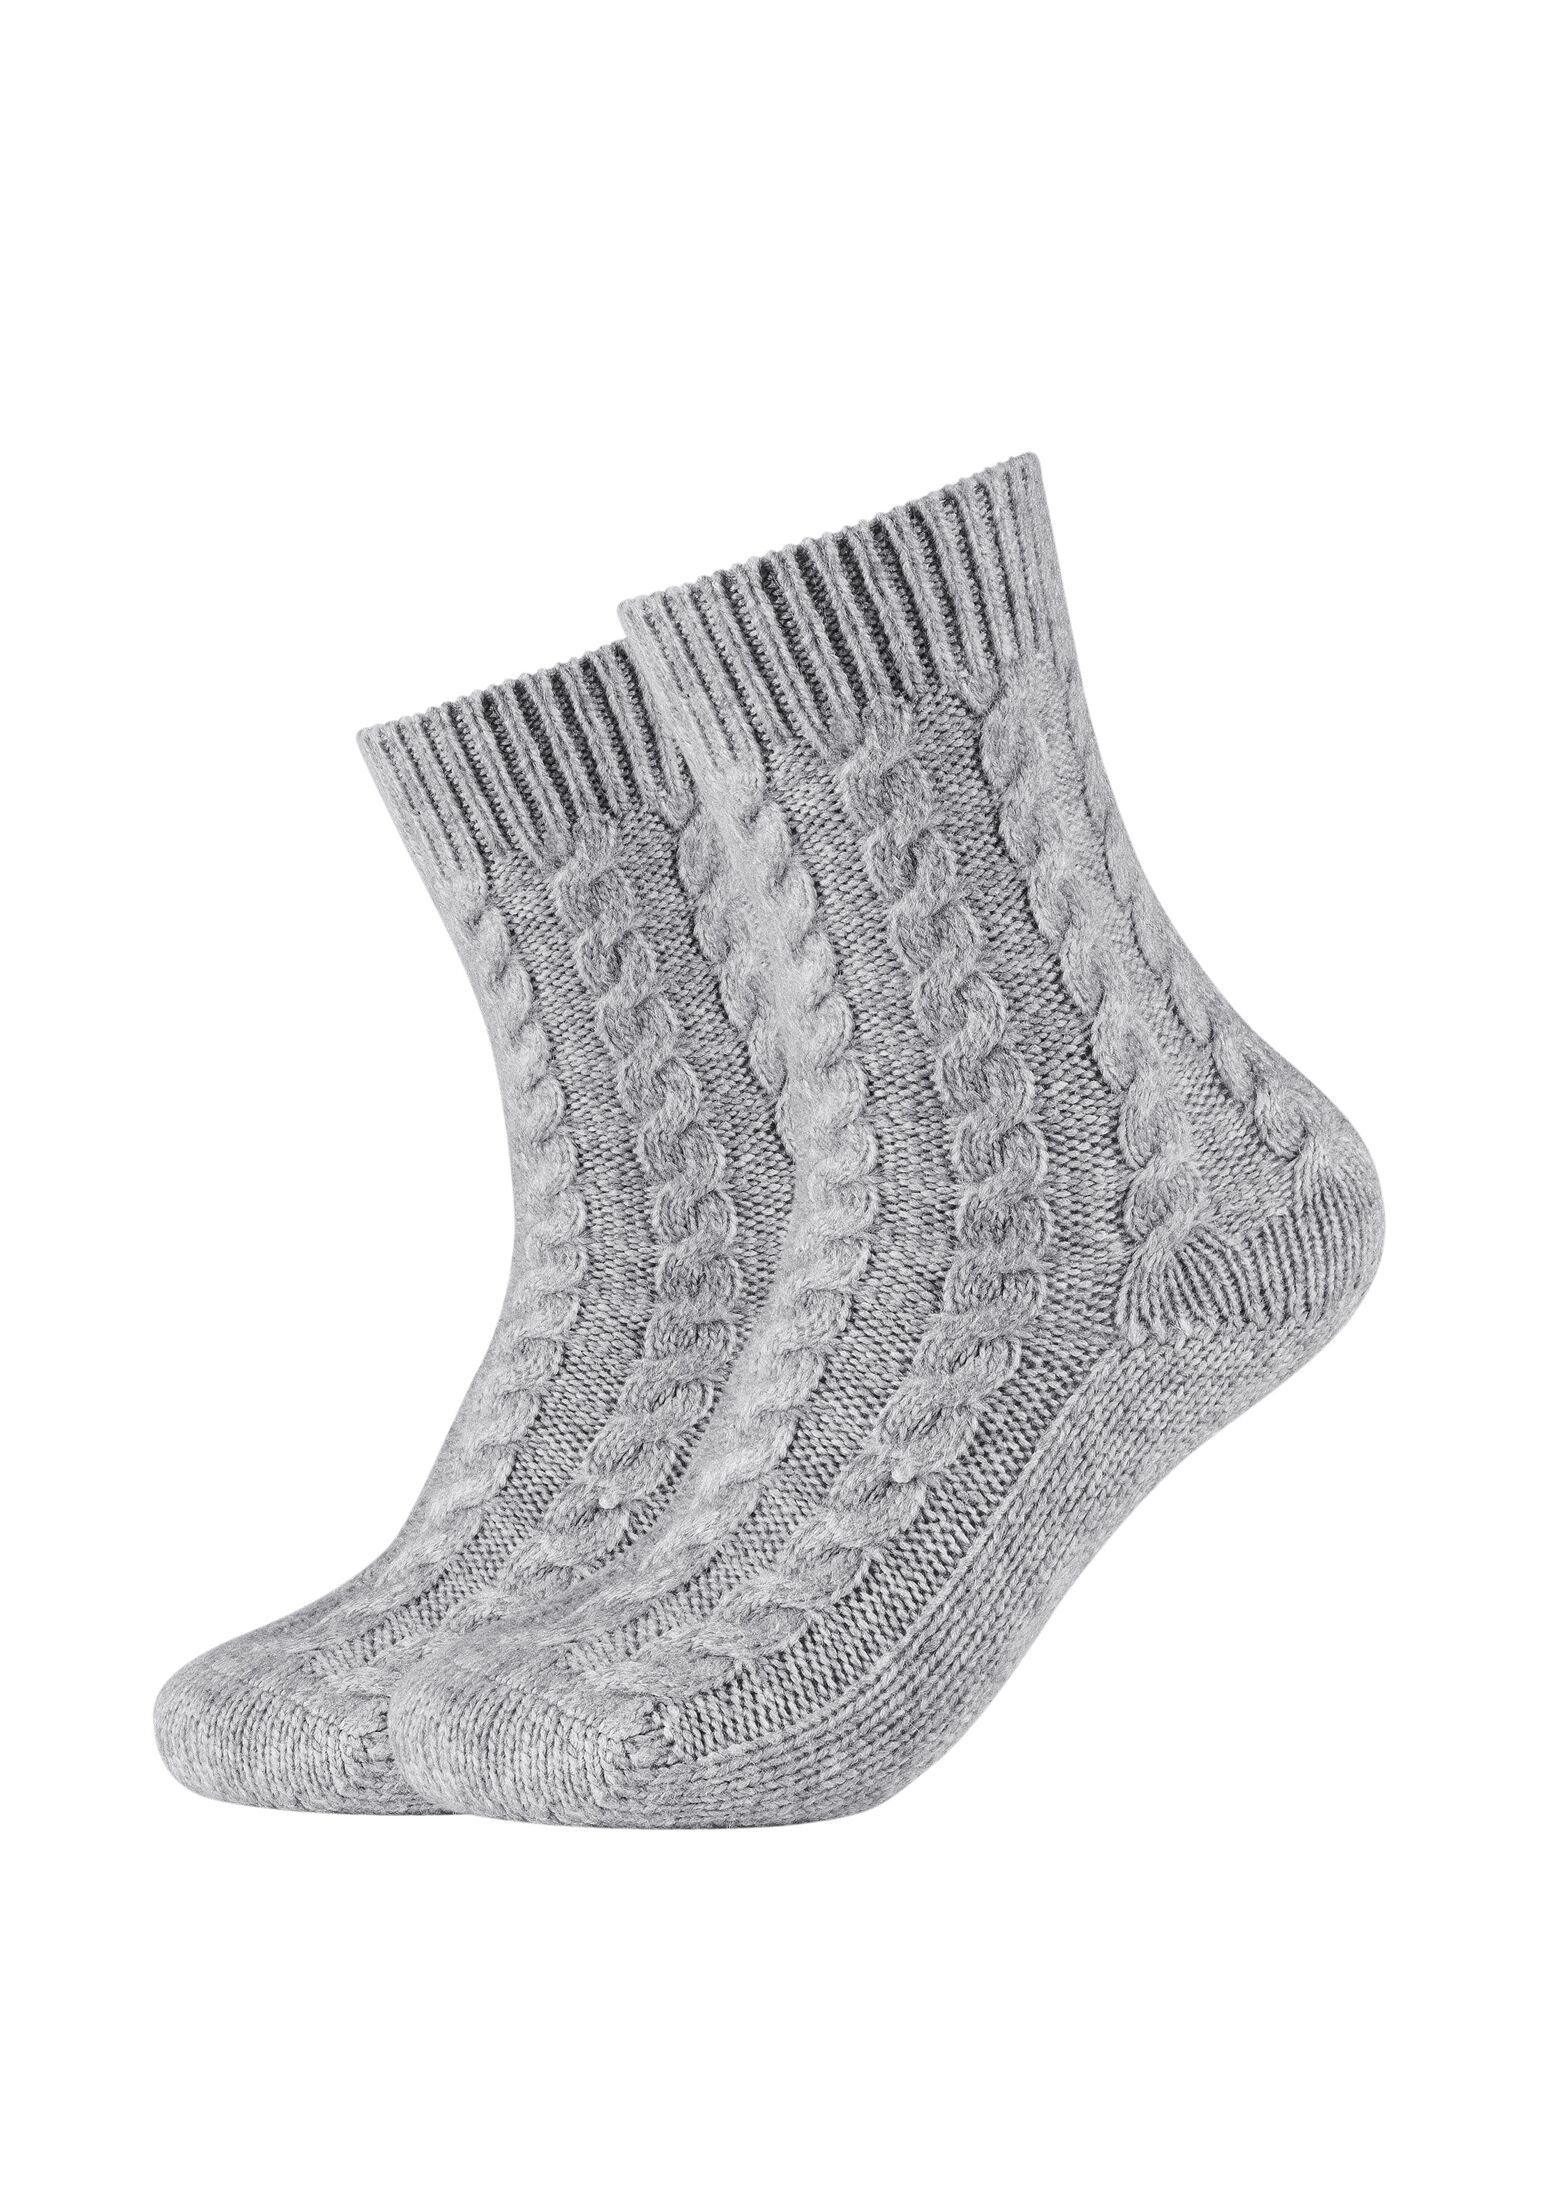 Camano Socken Socken Cosy Kuschelsocken Flauschig Warm Damen Zopfmuster Lang light grey melange